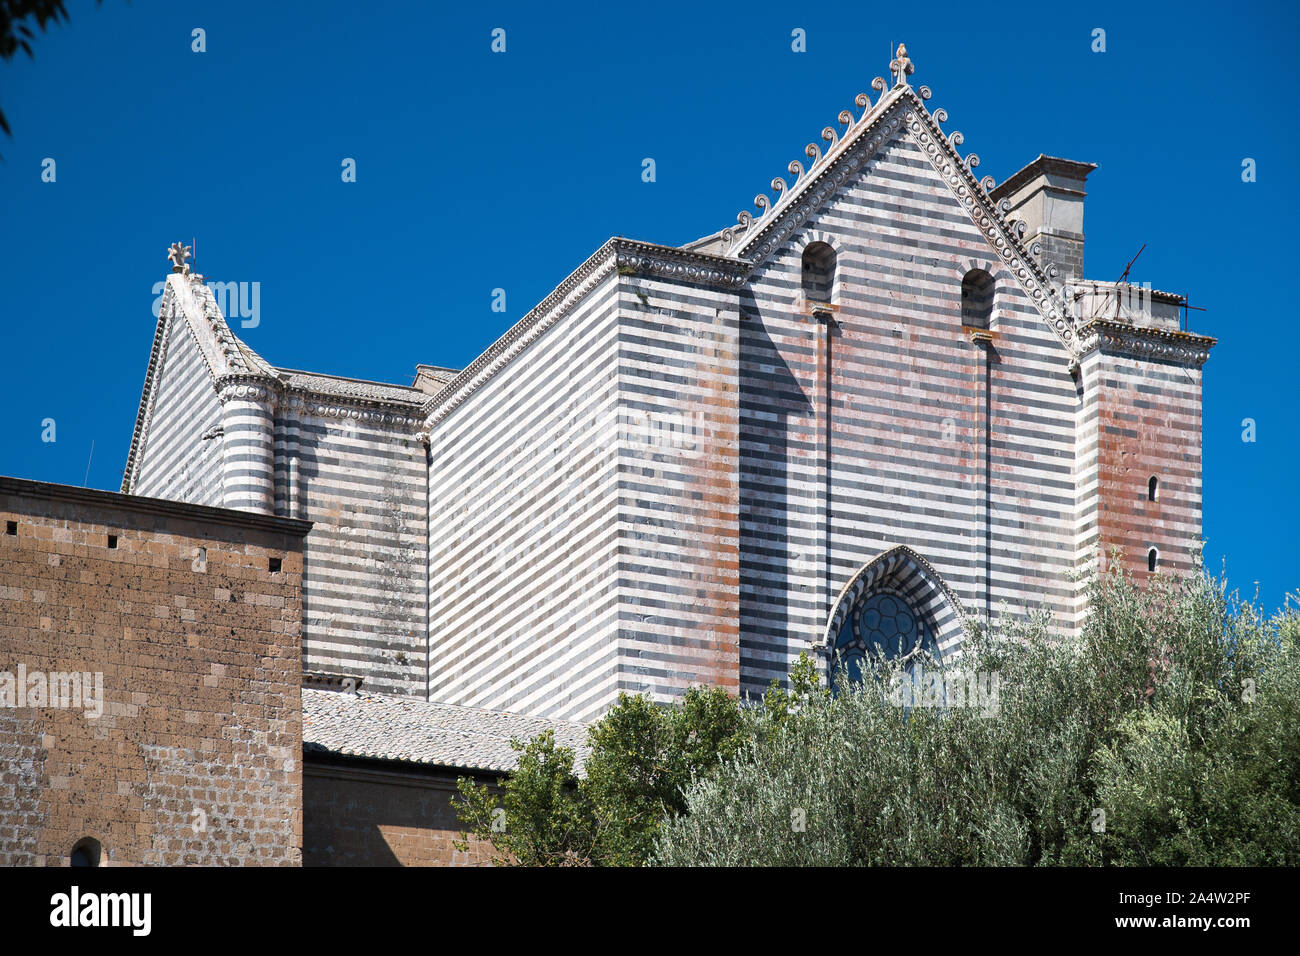 Gotico italiano Cattedrale di Santa Maria Assunta (Cattedrale dell Assunzione della Beata Vergine Maria) nel centro storico di Orvieto, Umbria, Italia. Au Foto Stock